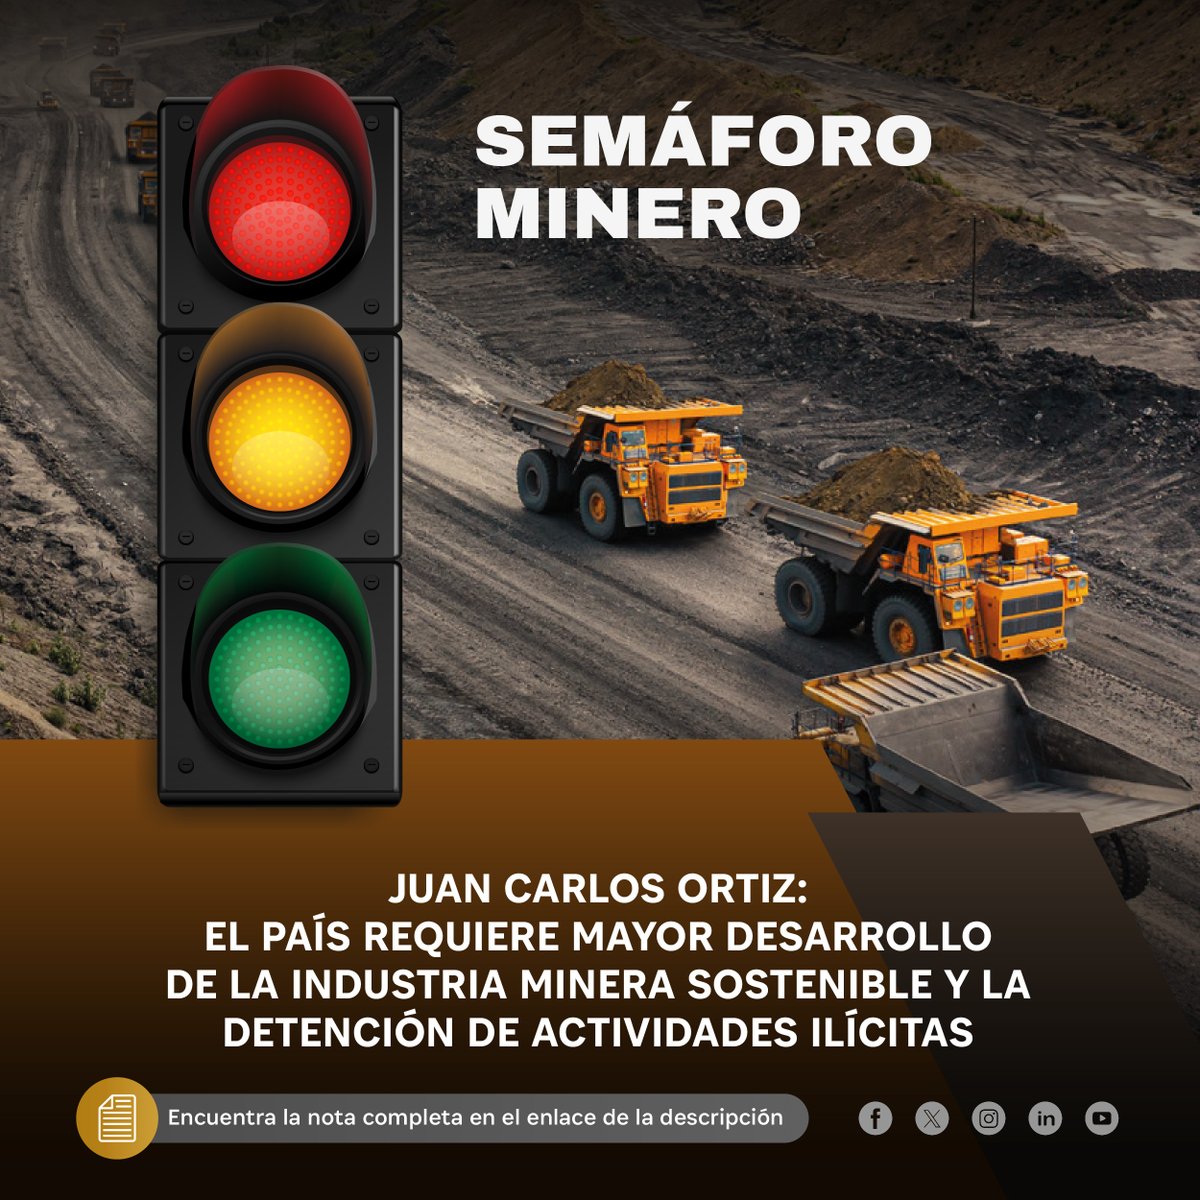 Juan Carlos Ortiz: El país requiere mayor desarrollo de la industria minera sostenible y la detención de actividades ilícitas Entérate más aquí: 👇 ow.ly/lASU50RreyV #MineríaPerú #Mining #IndustriaMineraSostenible #SectorMinero